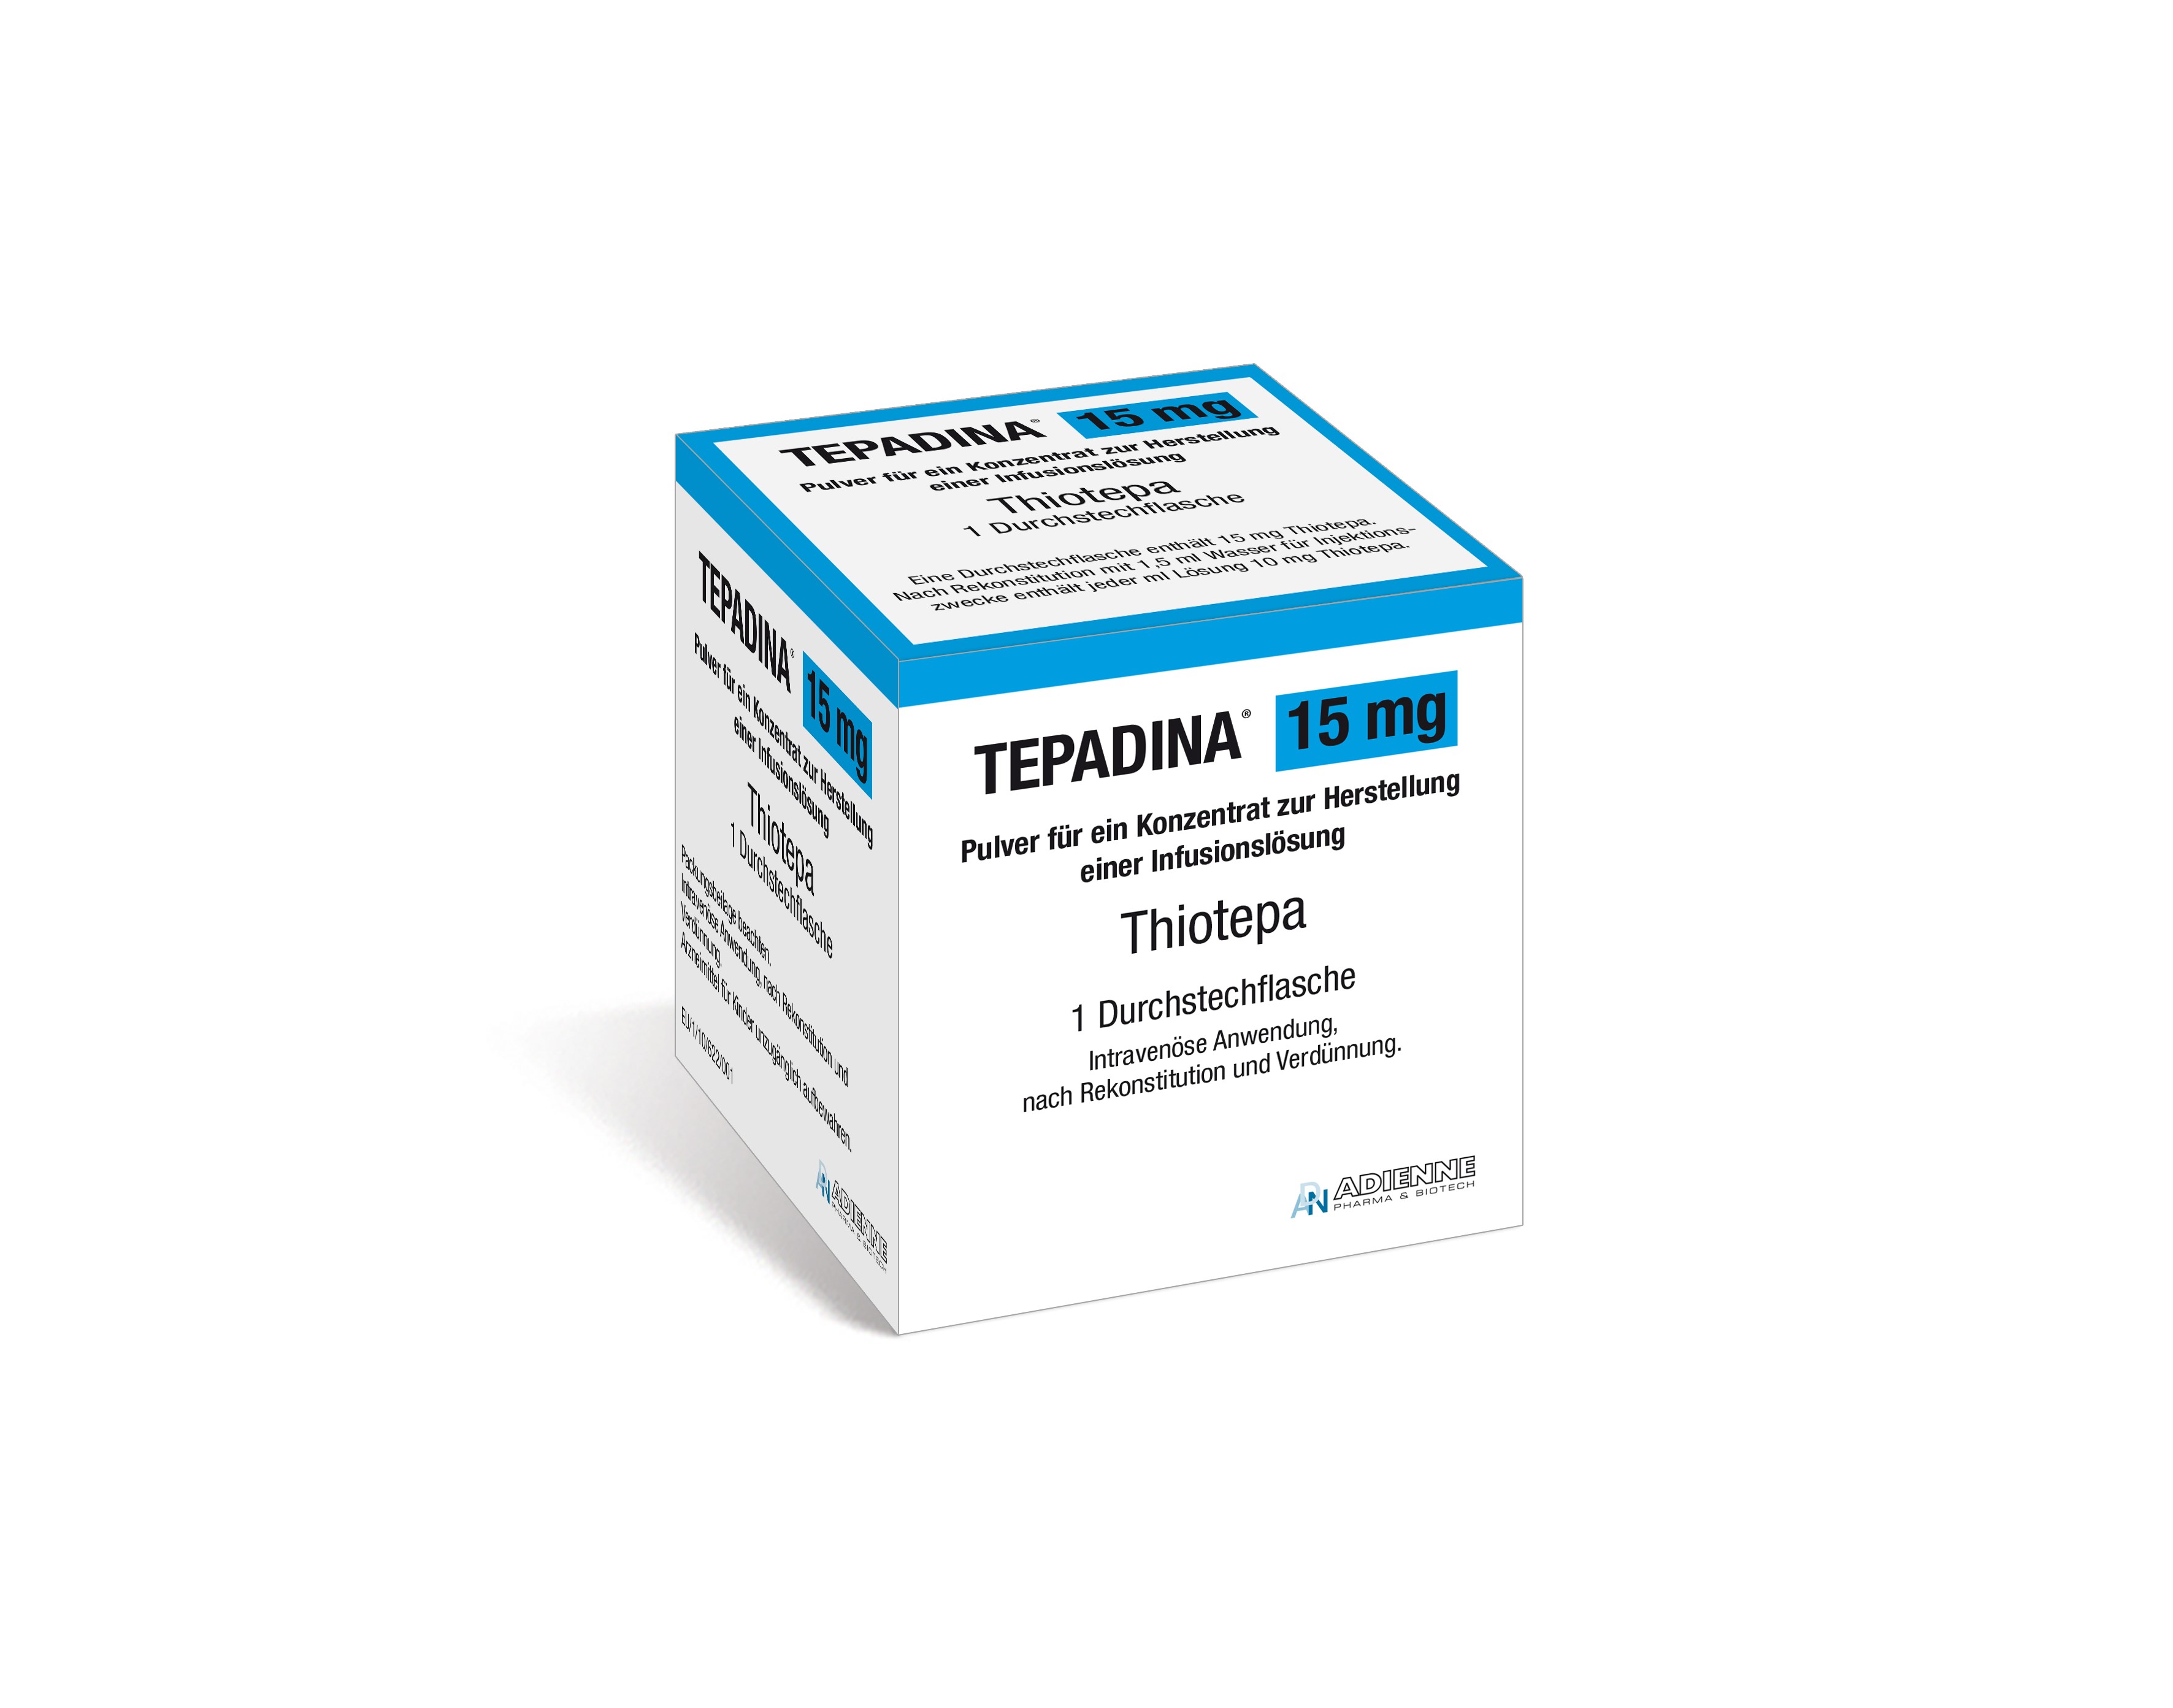 Accord Packshot Tepadina 15 mg